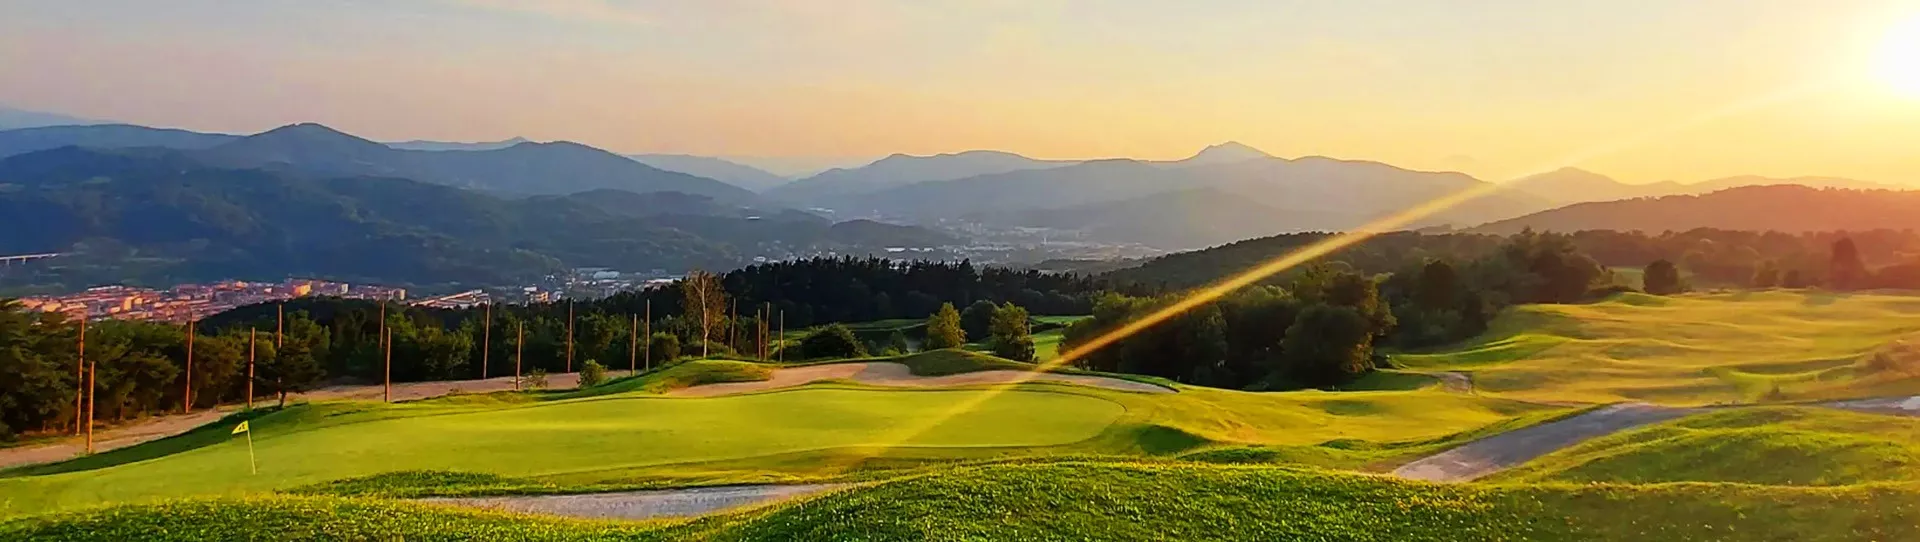 Spain golf courses - Uraburu Golf - Photo 2